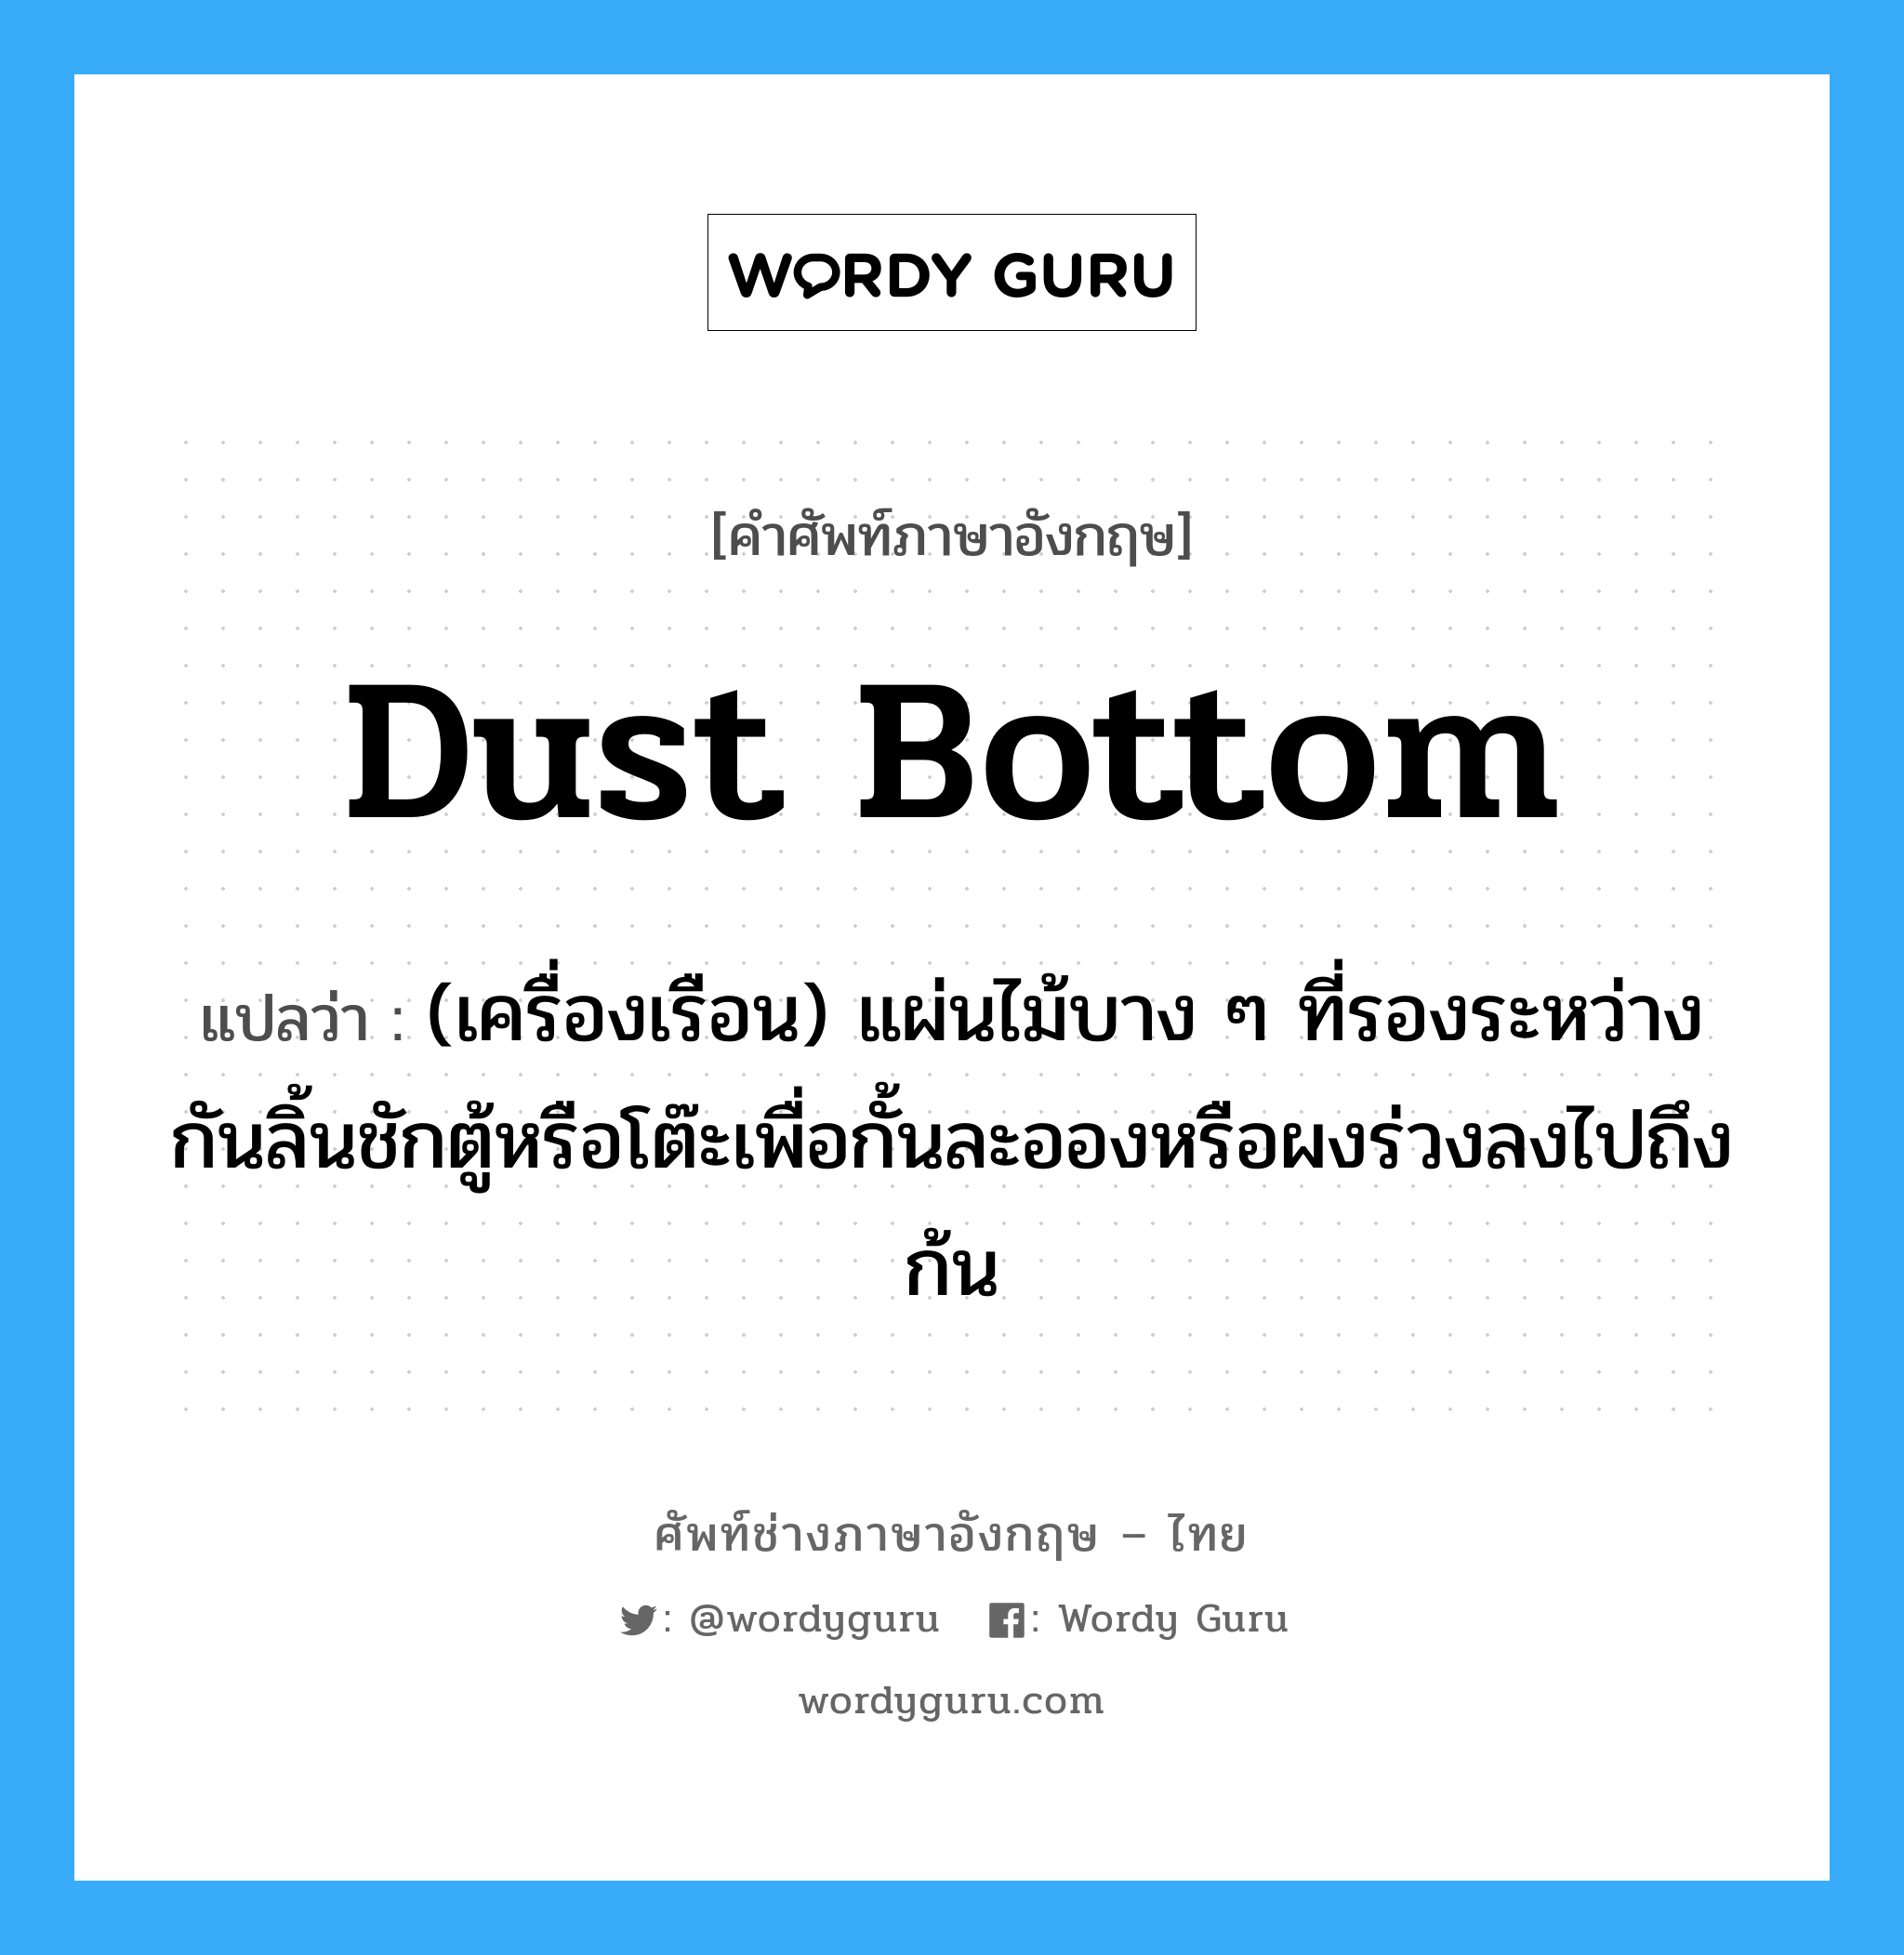 dust bottom แปลว่า?, คำศัพท์ช่างภาษาอังกฤษ - ไทย dust bottom คำศัพท์ภาษาอังกฤษ dust bottom แปลว่า (เครื่องเรือน) แผ่นไม้บาง ๆ ที่รองระหว่างกันลิ้นชักตู้หรือโต๊ะเพื่อกั้นละอองหรือผงร่วงลงไปถึงก้น